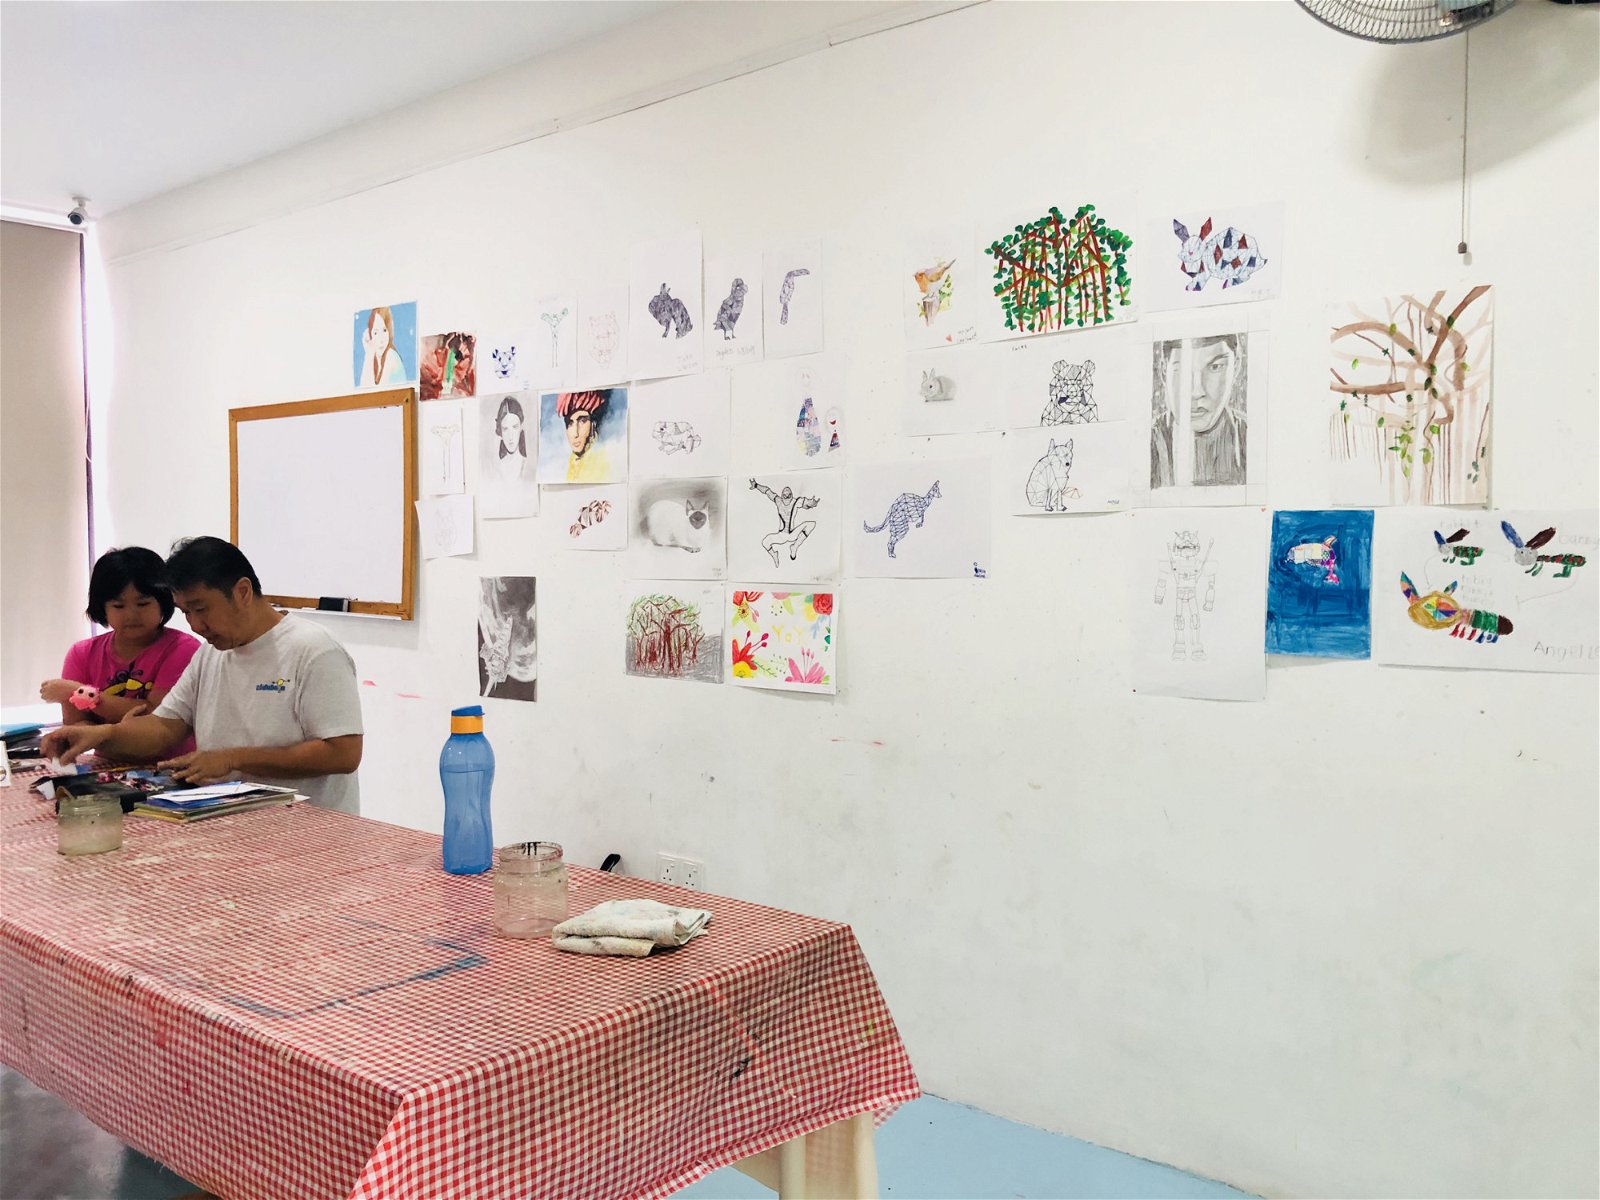 除了平日的补习班和一系列的精彩活动，由廖维良作为导师的“阿料的移动画室”也于此授课。每个周四和周五都会有成人绘画班，让大人们也能在这里学习。